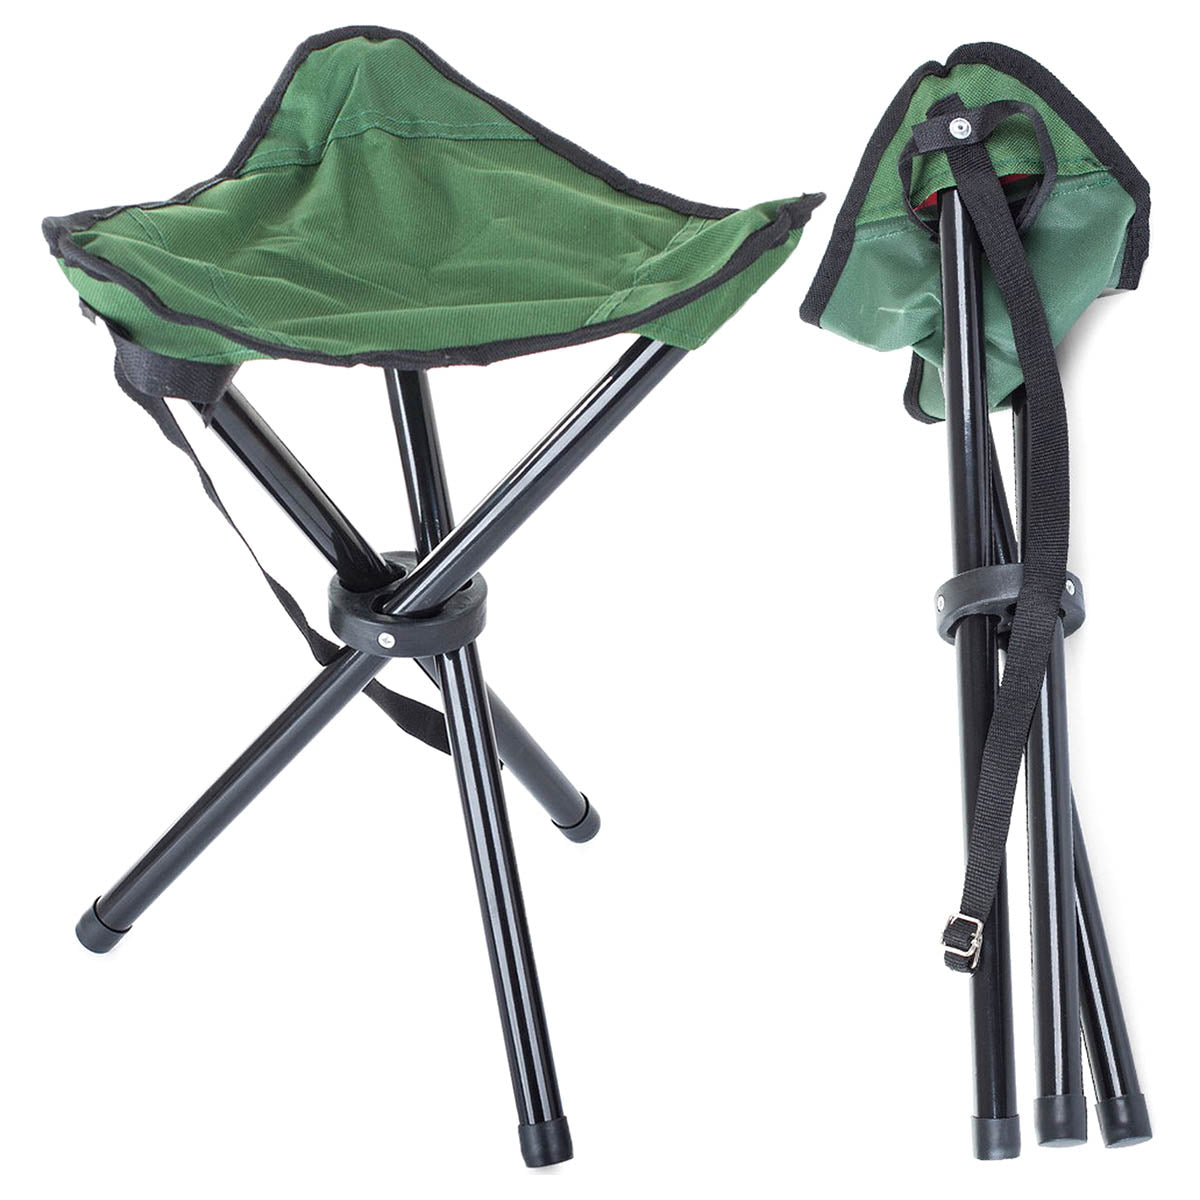 <tc>Ariko</tc> foldable Fishing Stool - 3-legged Stool - Green/ Black - Lightweight - Foldable - Camping Stool - Festival Stool